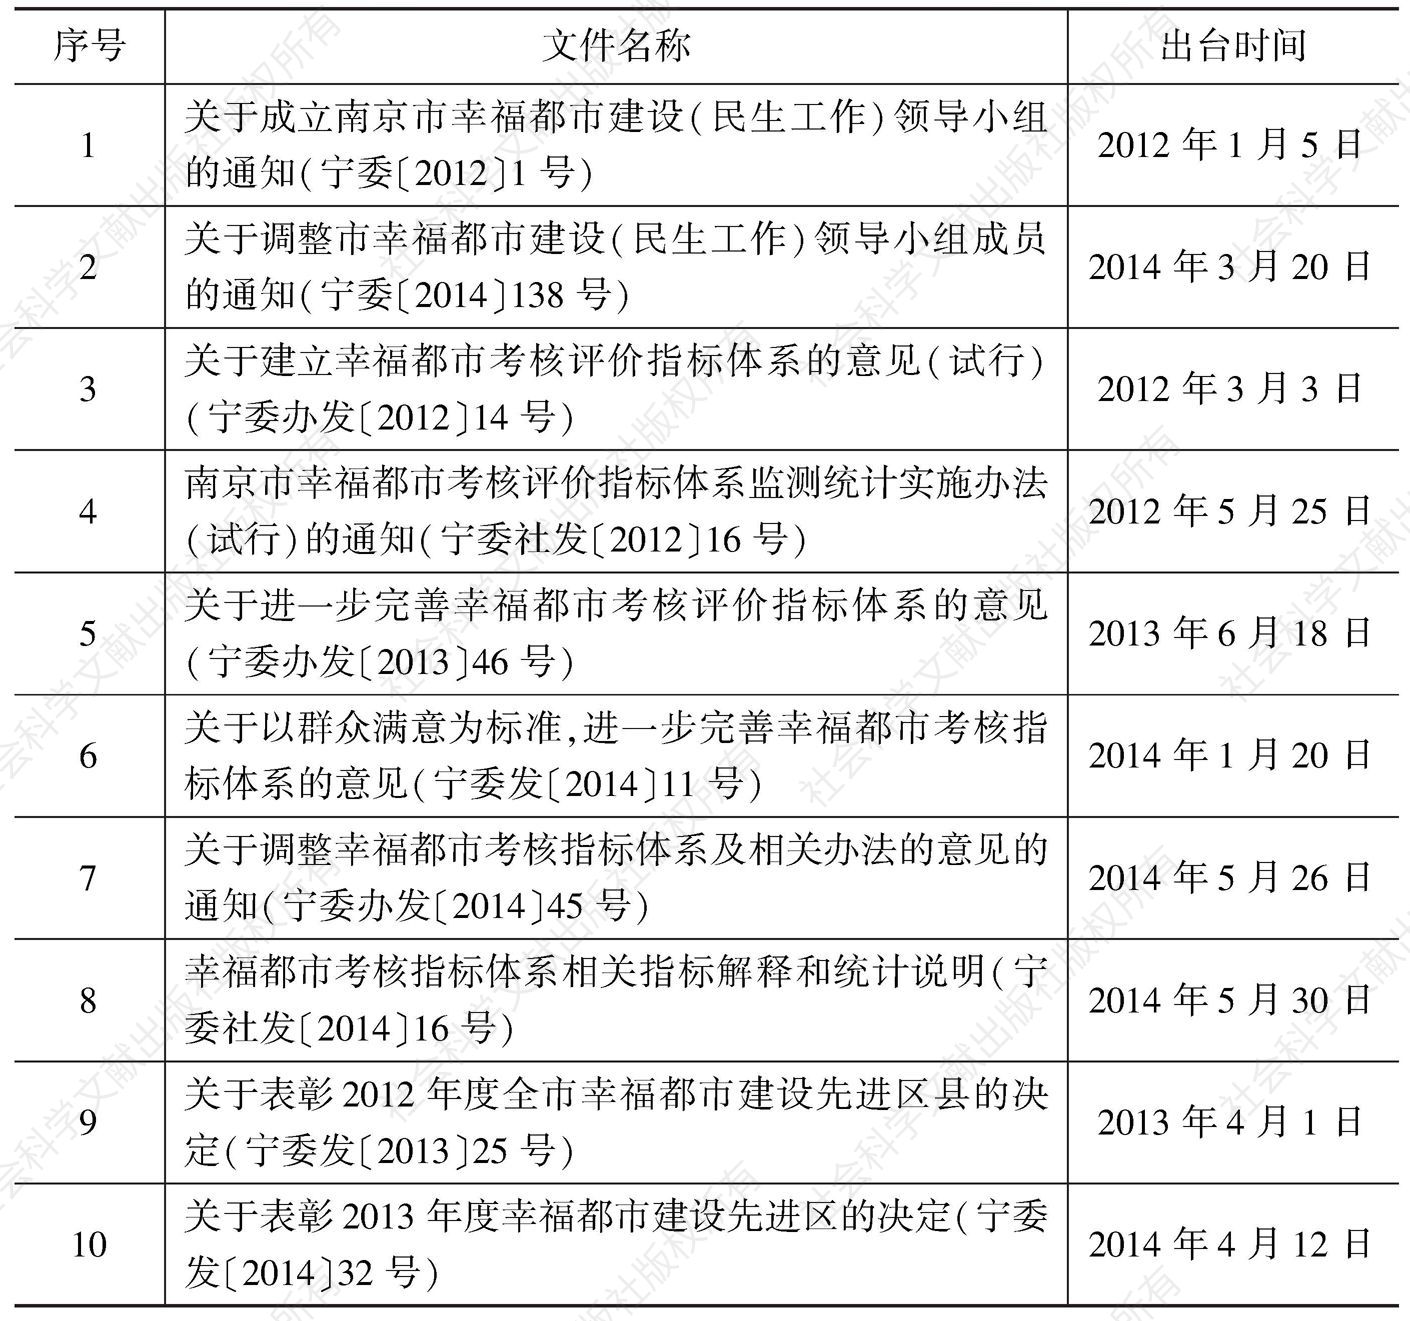 表4 南京市出台的幸福都市指标体系建设相关文件